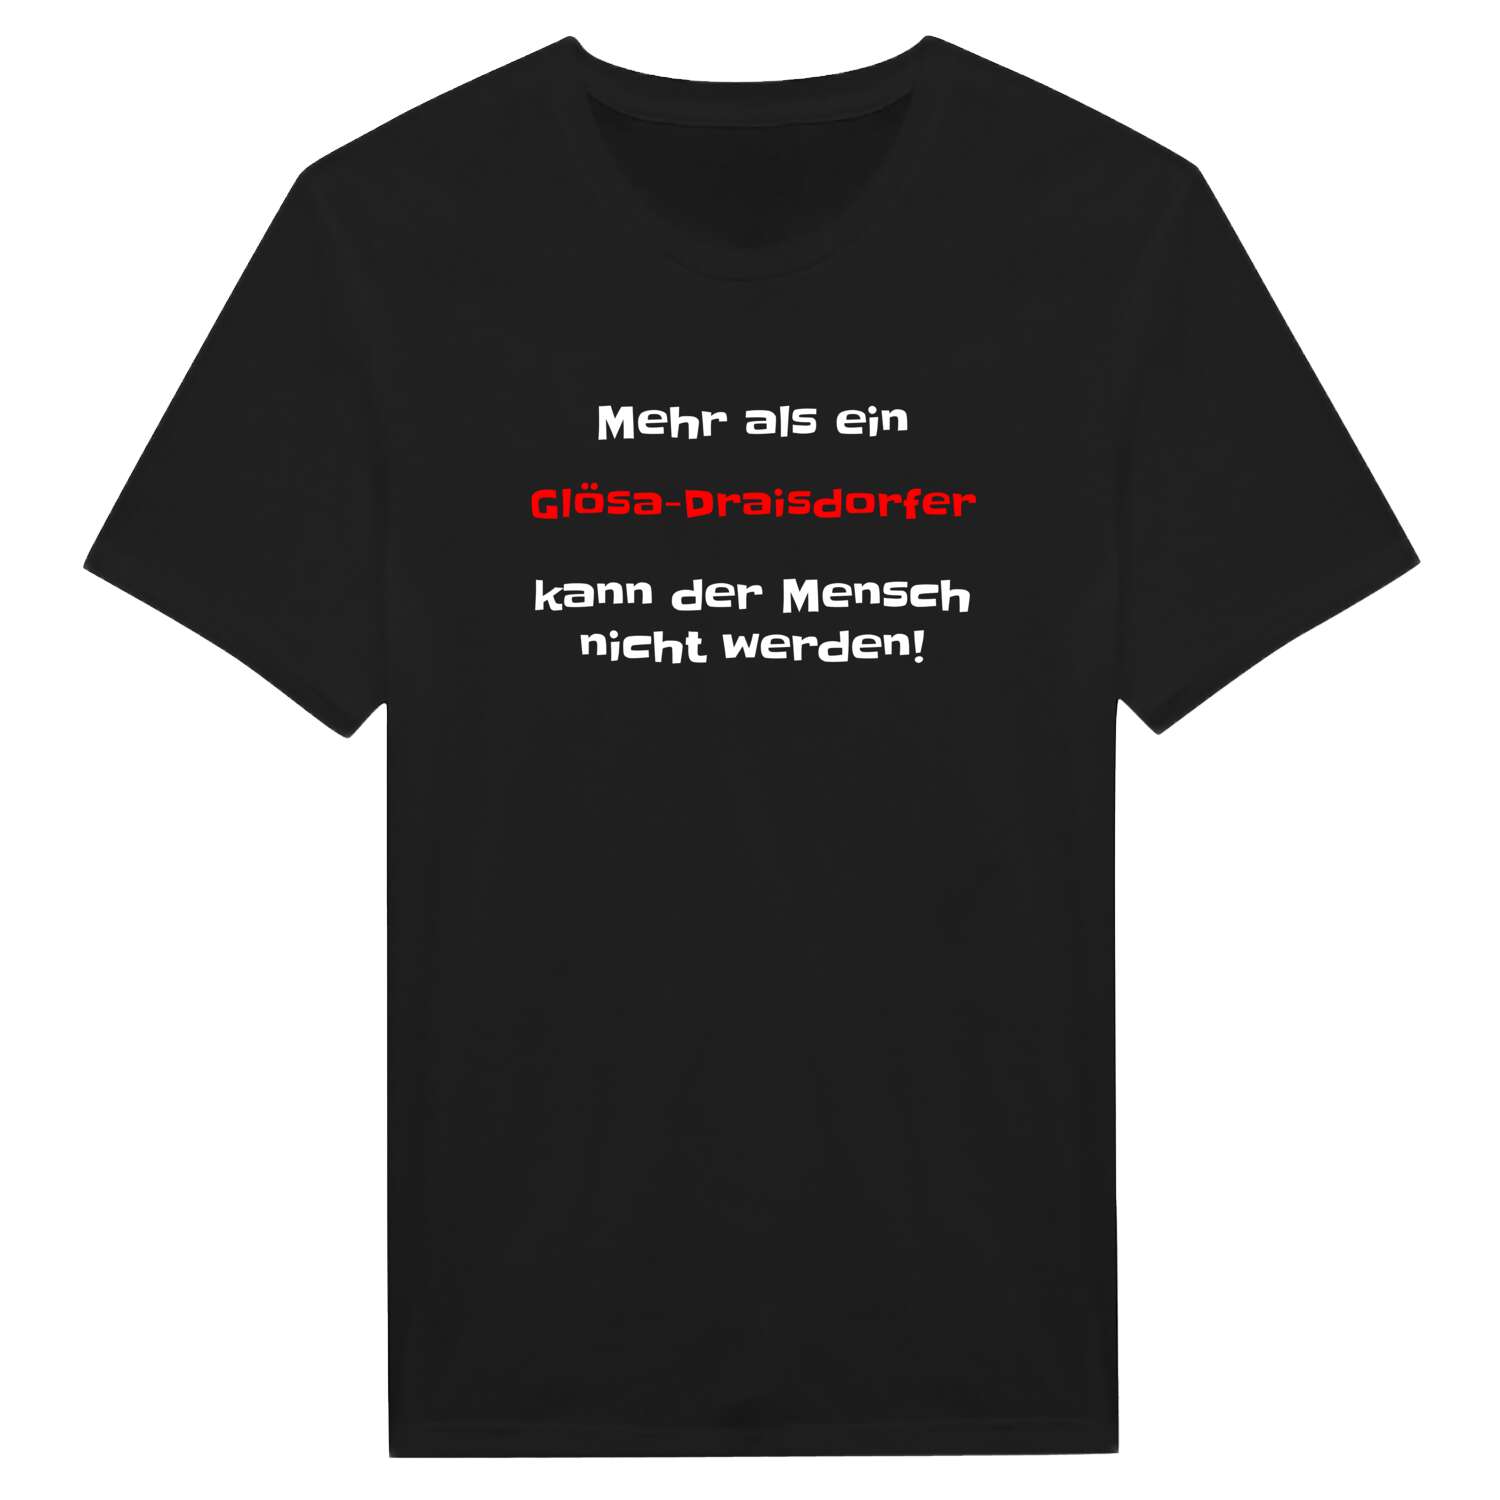 Glösa-Draisdorf T-Shirt »Mehr als ein«